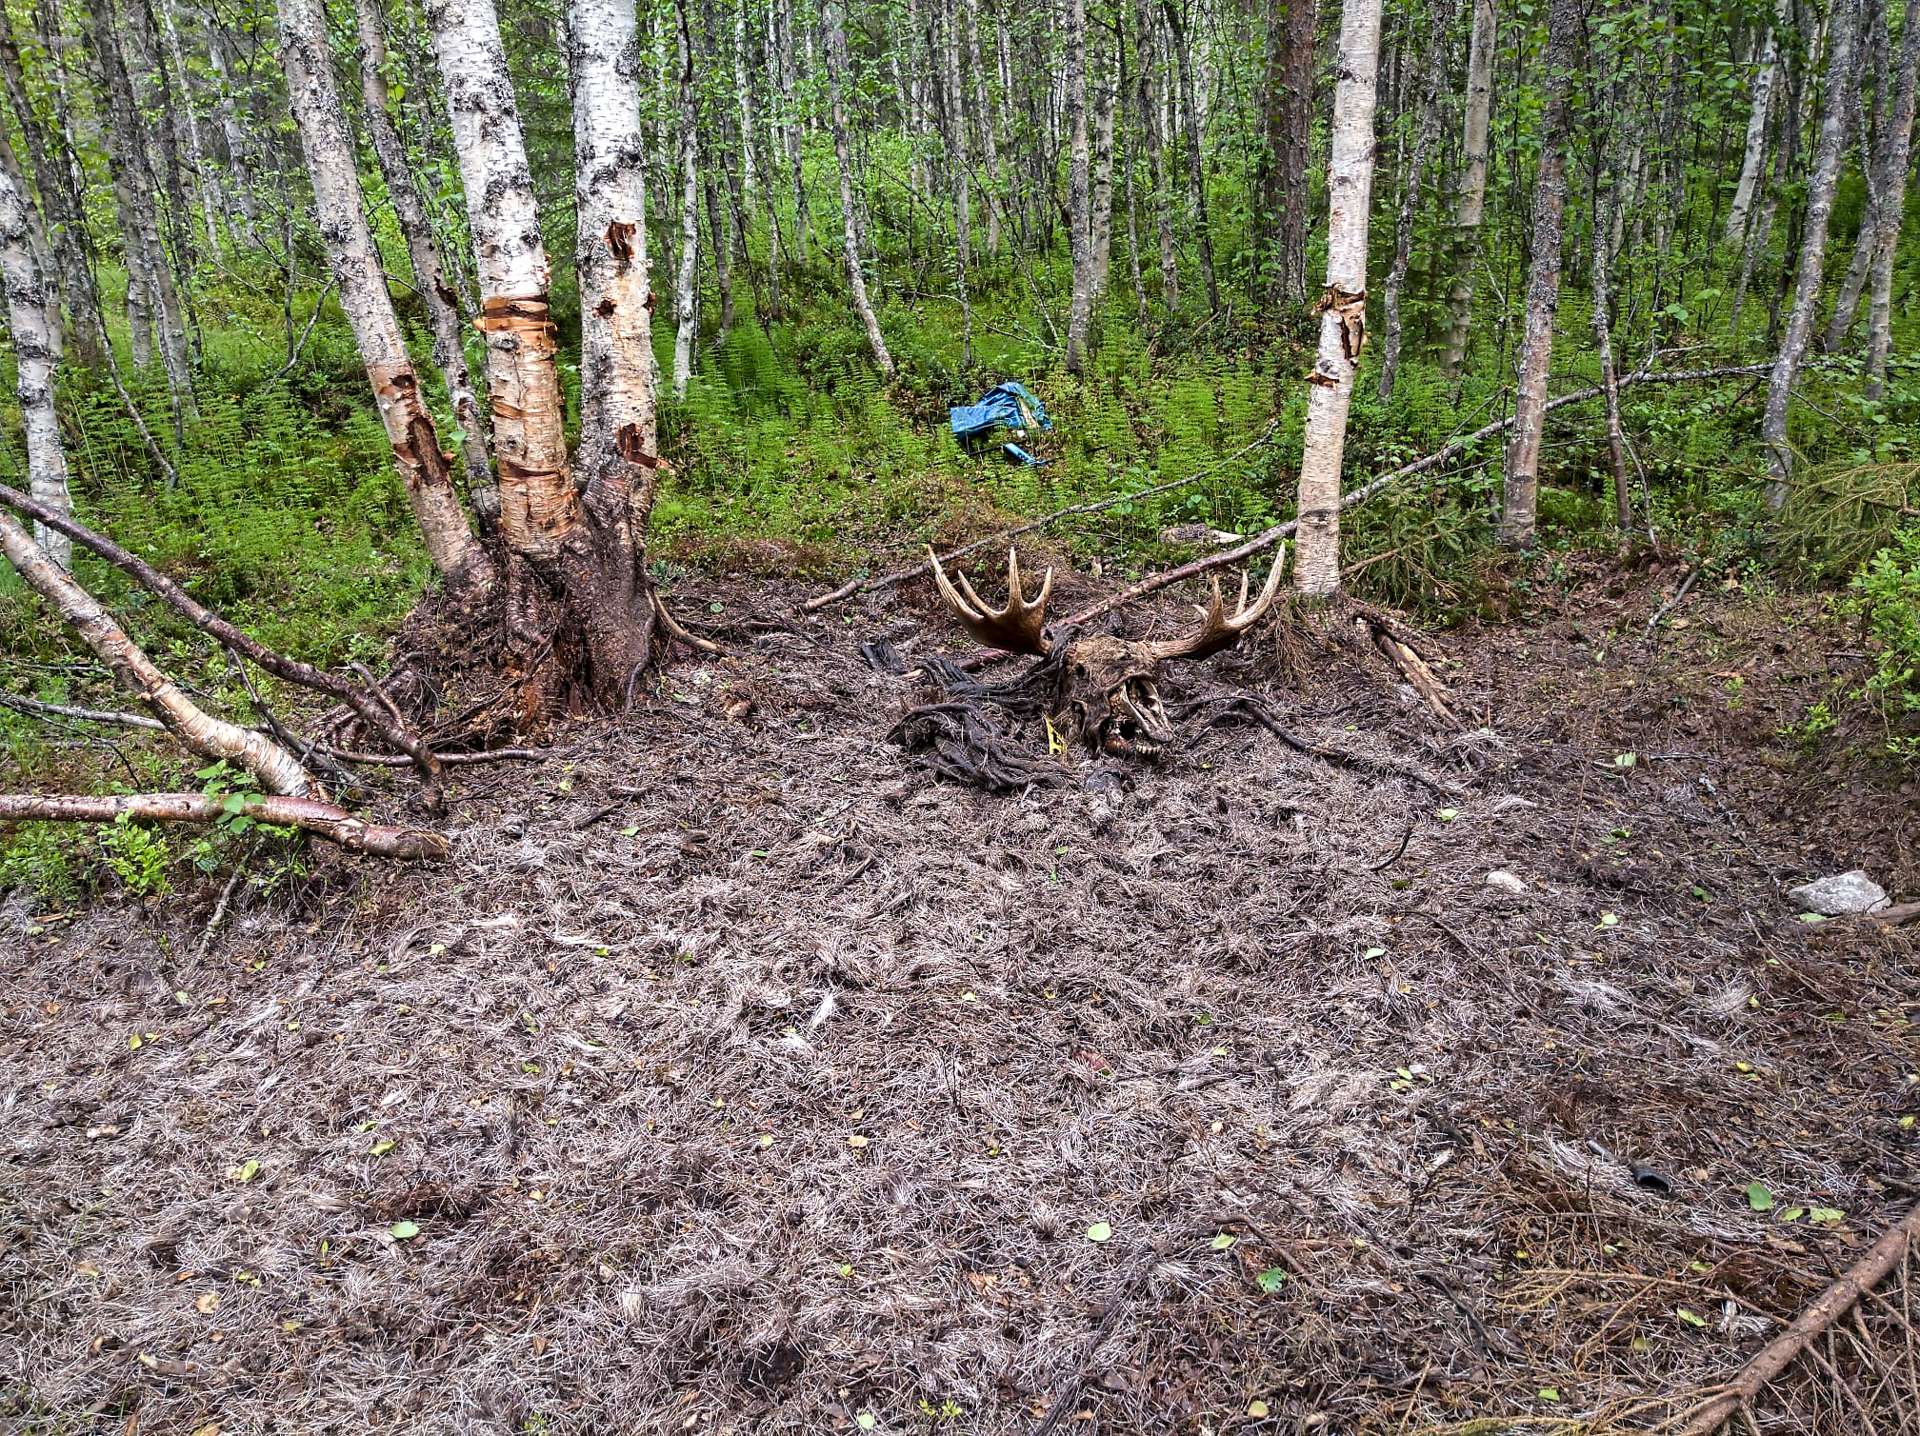 Öppen plats i skogen med päls och älghorn på marken, skador på björkar.